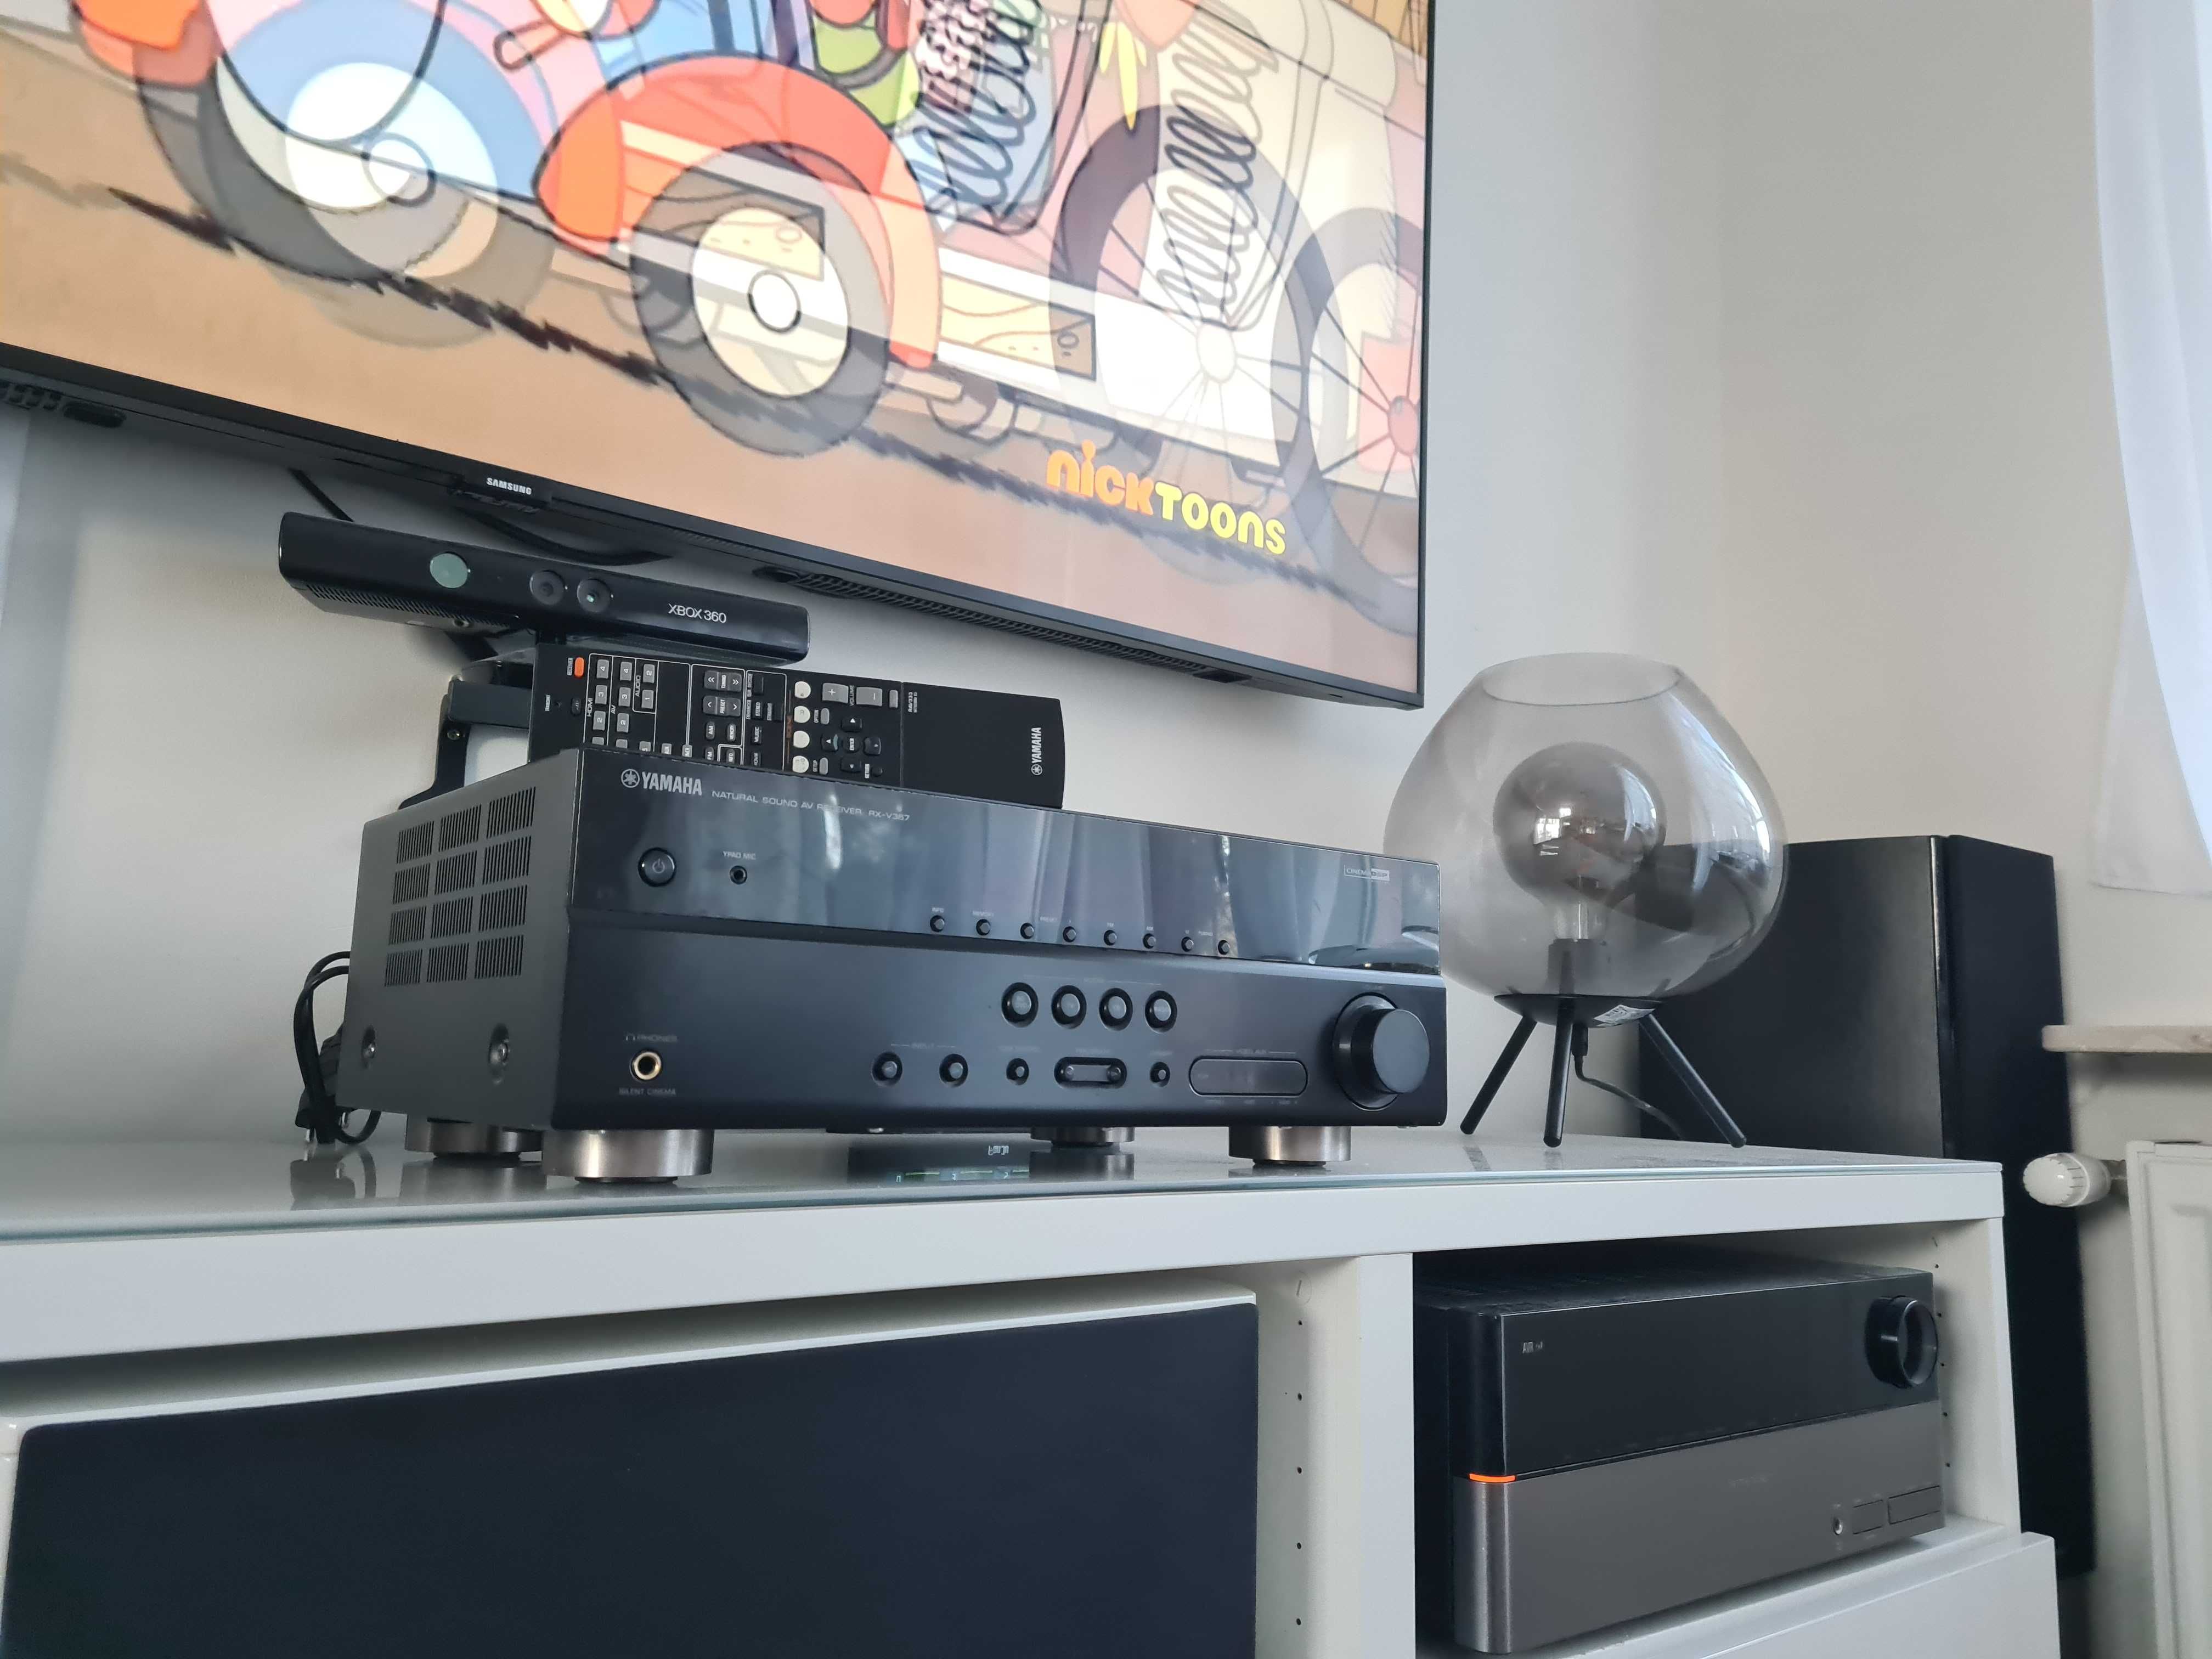 OKAZJA Amplituner wzmacniacz Yamaha rx v367 kino domowe bluetooth hdmi